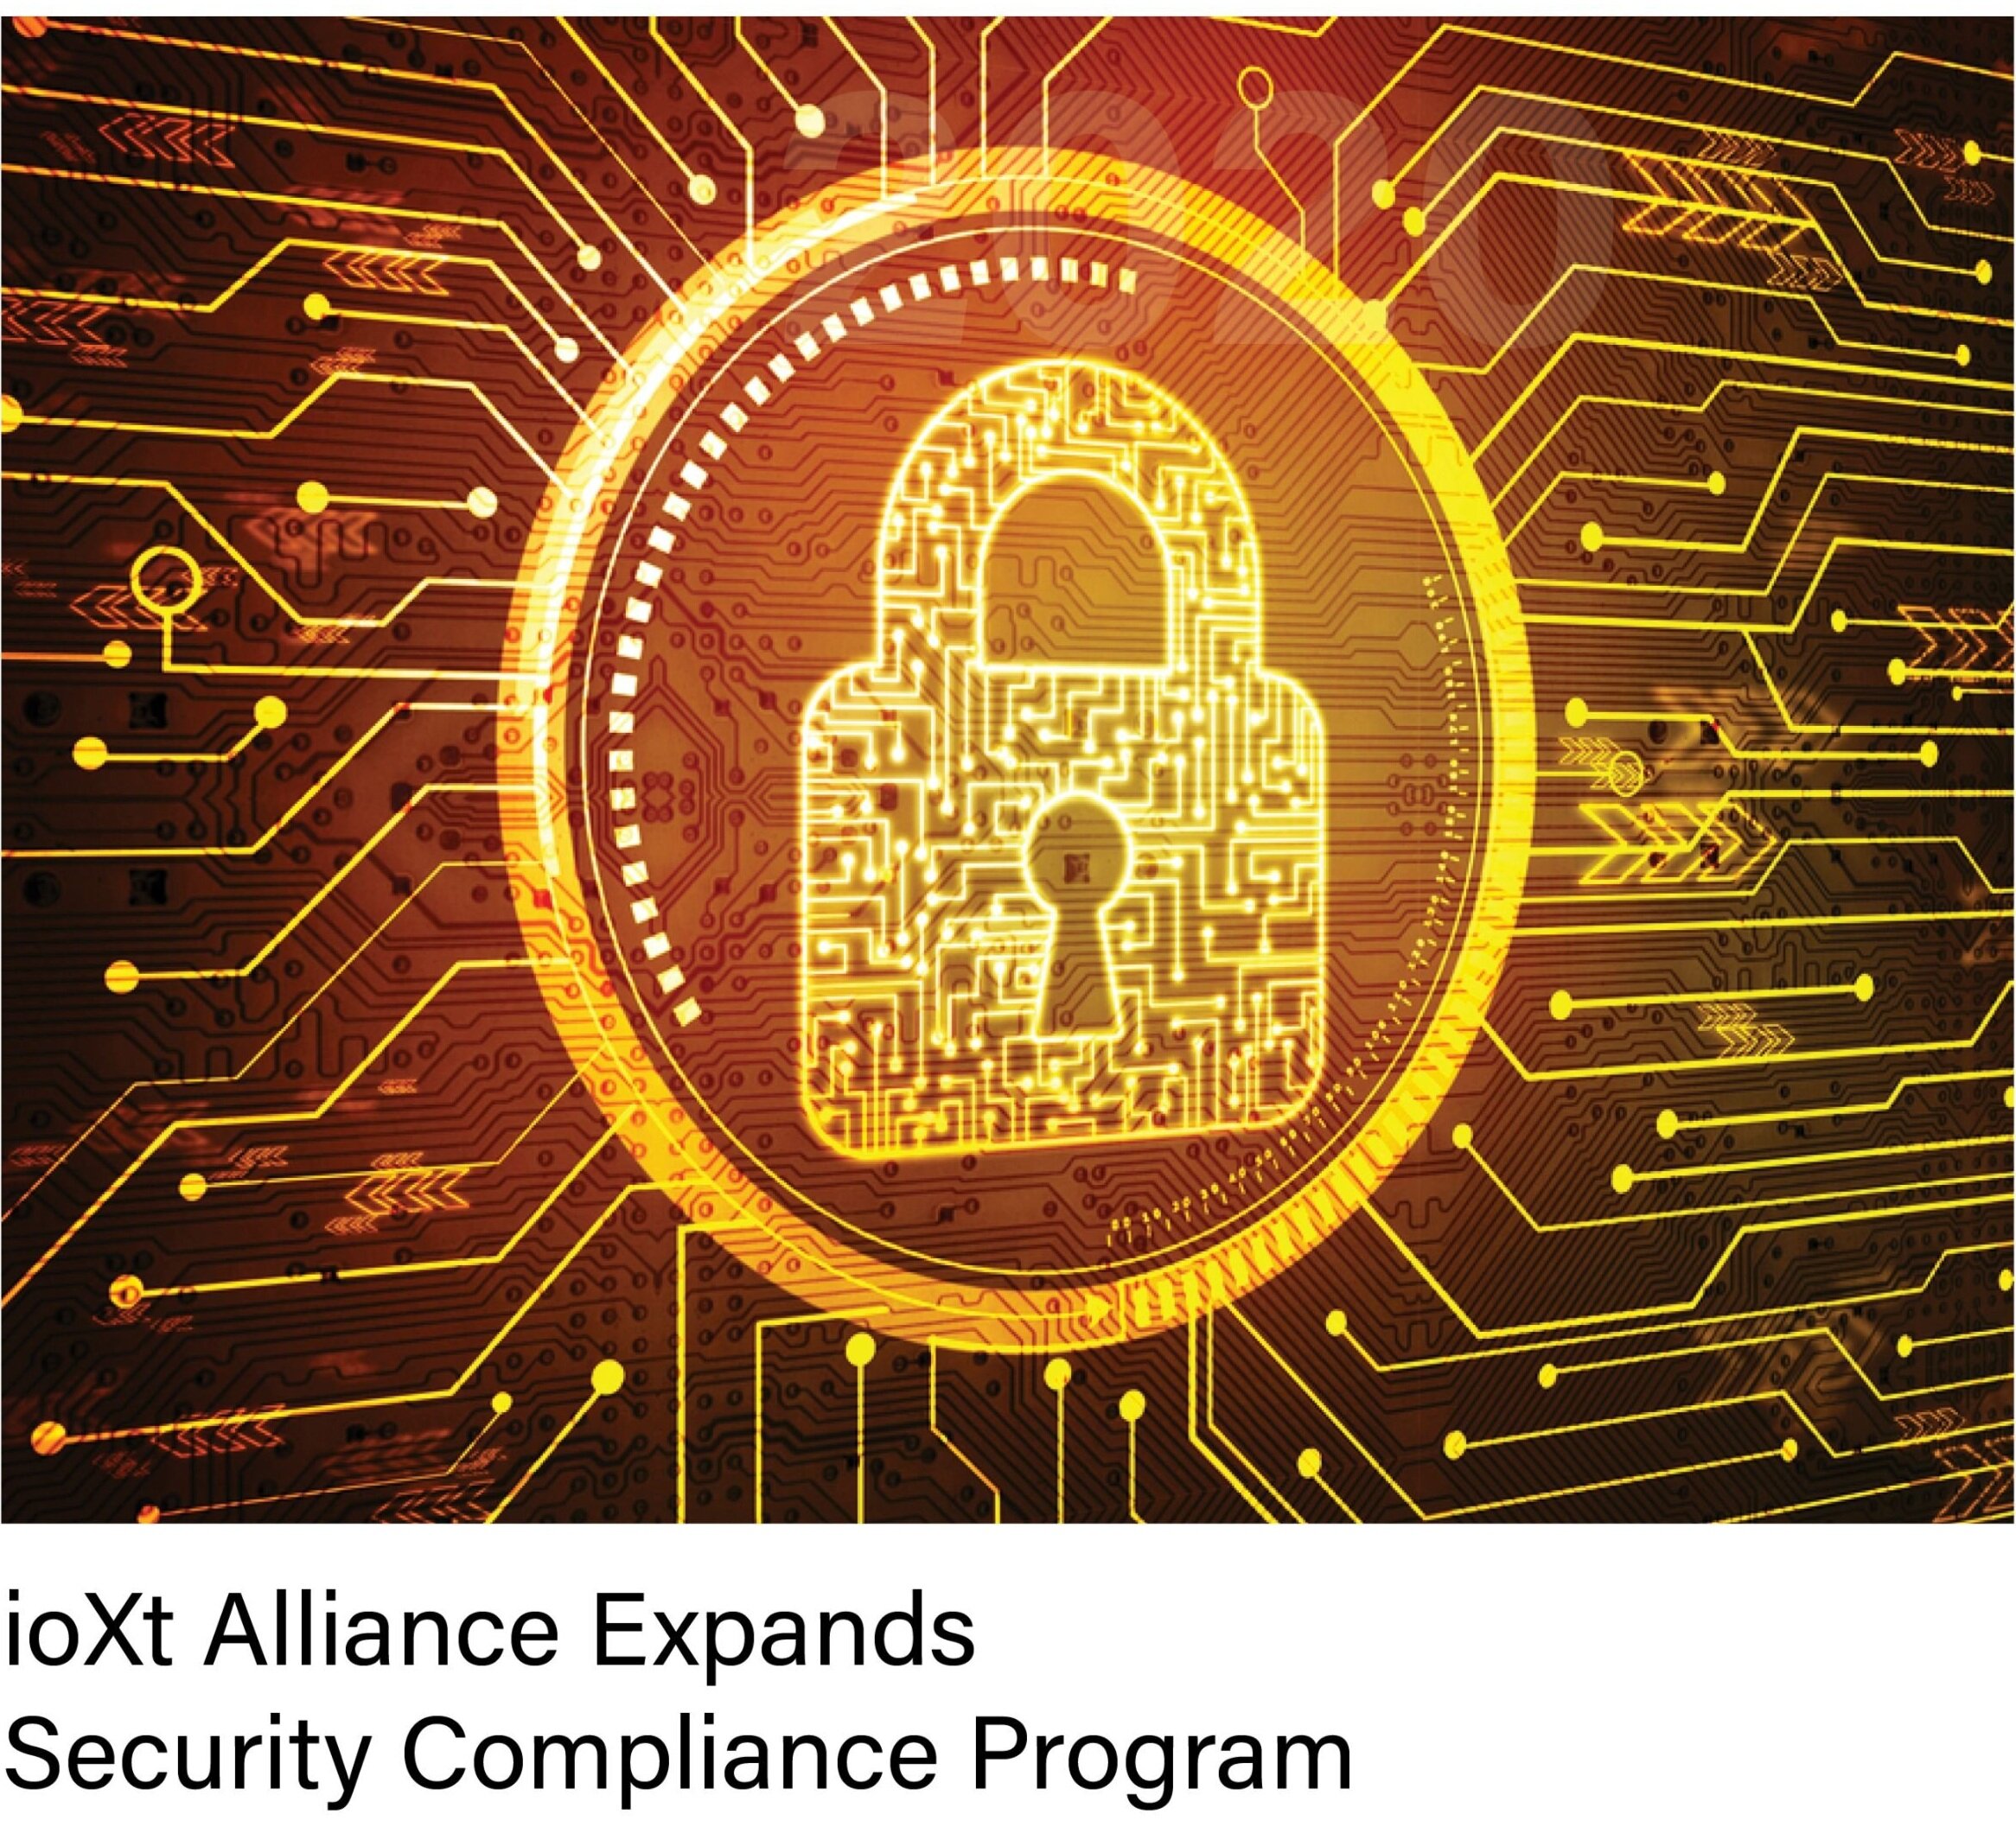 ioXt+Alliance+Expands+_Security+Compliance+Program2020%5B2%5D.jpg